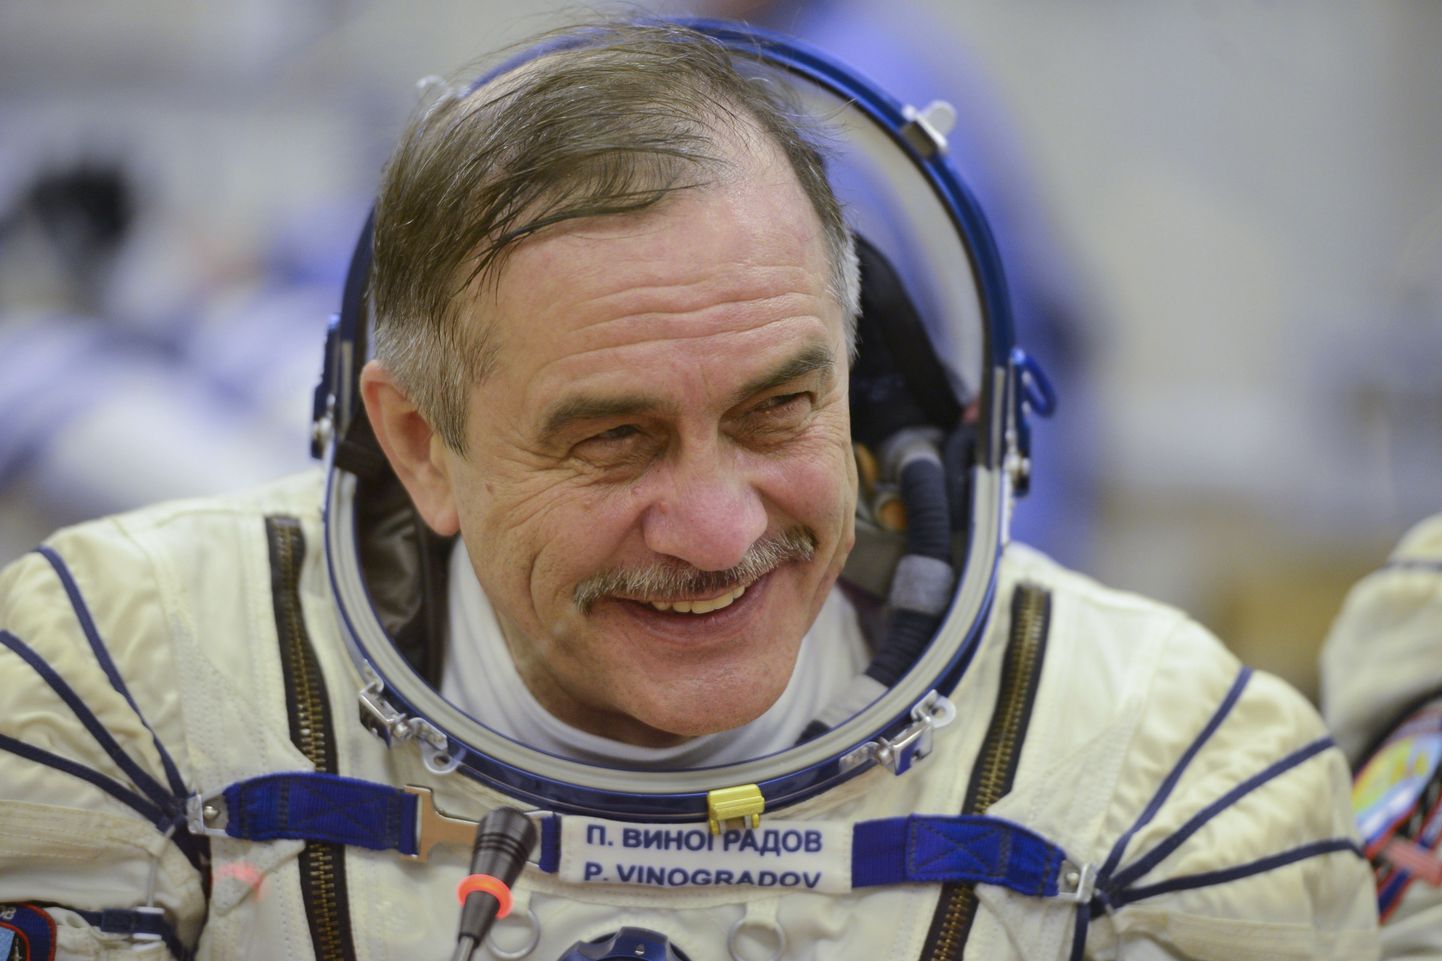 Vene kosmonaut Pavel Vinogradov